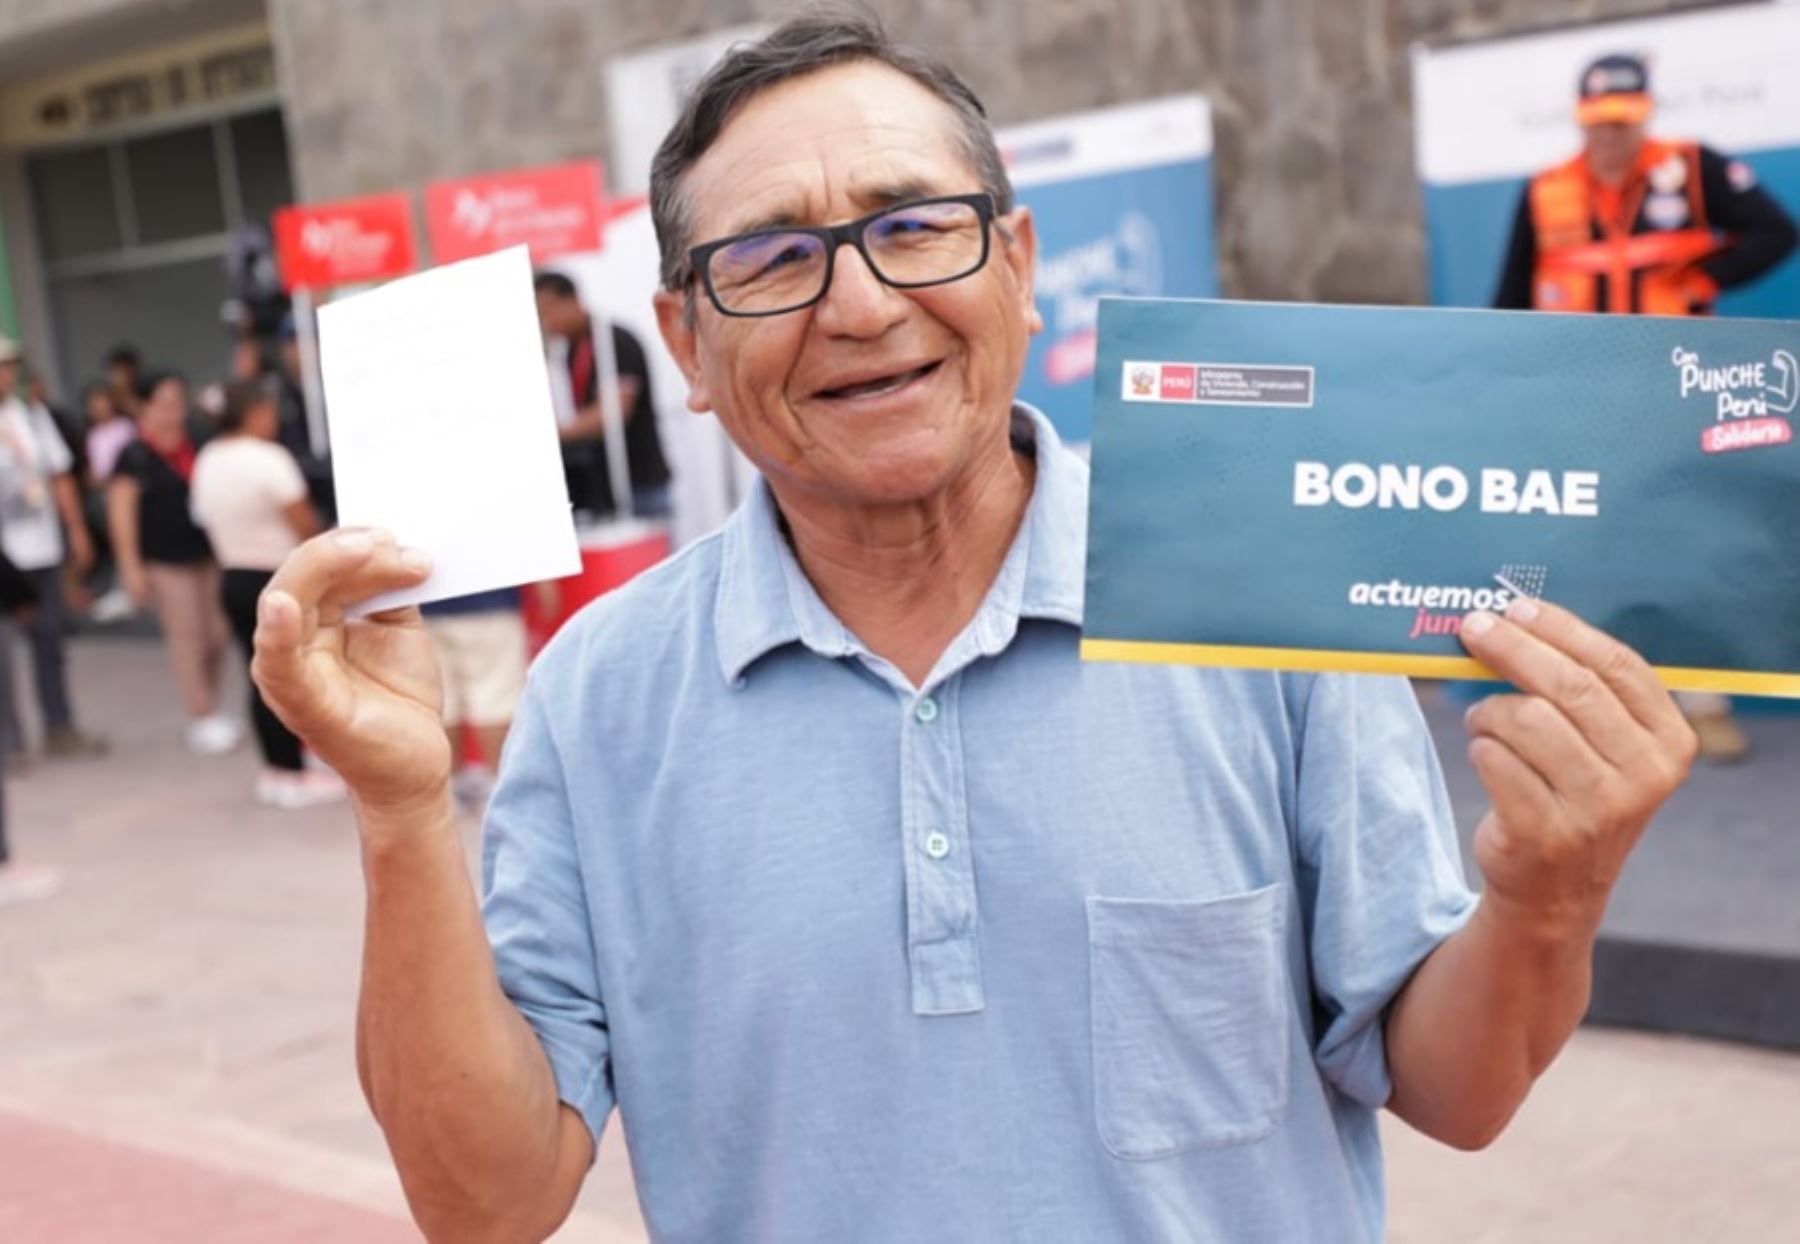 El Ministerio de Vivienda, Construcción y Saneamiento anunció una nueva convocatoria para entregar el Bono de Arrendamiento de Vivienda para Emergencias (BAE) -llamado también Bono 500- a 915 familias damnificadas por las lluvias en la región de Lambayeque.